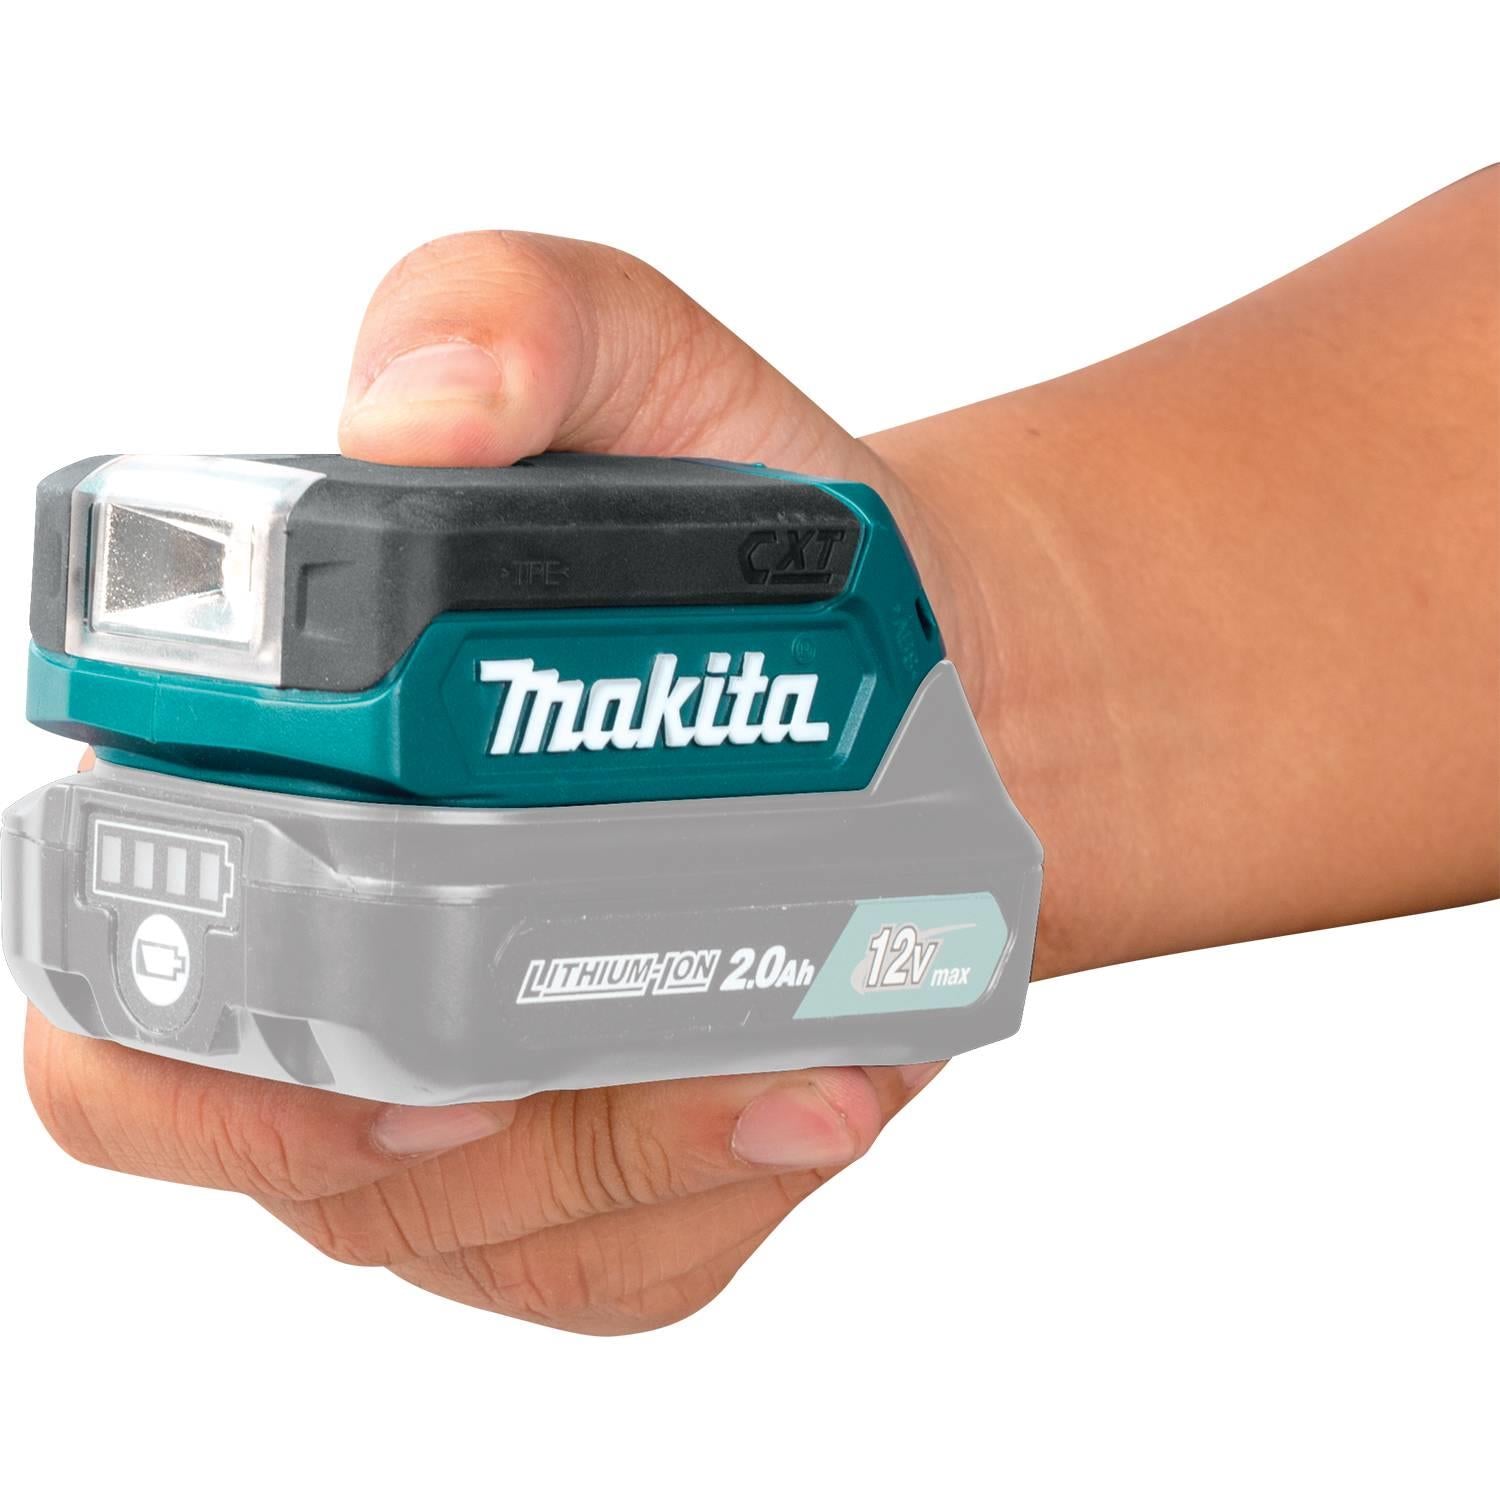 Makita 12V max CXT Lithium-Ion High Capacity Battery Pack 4.0Ah